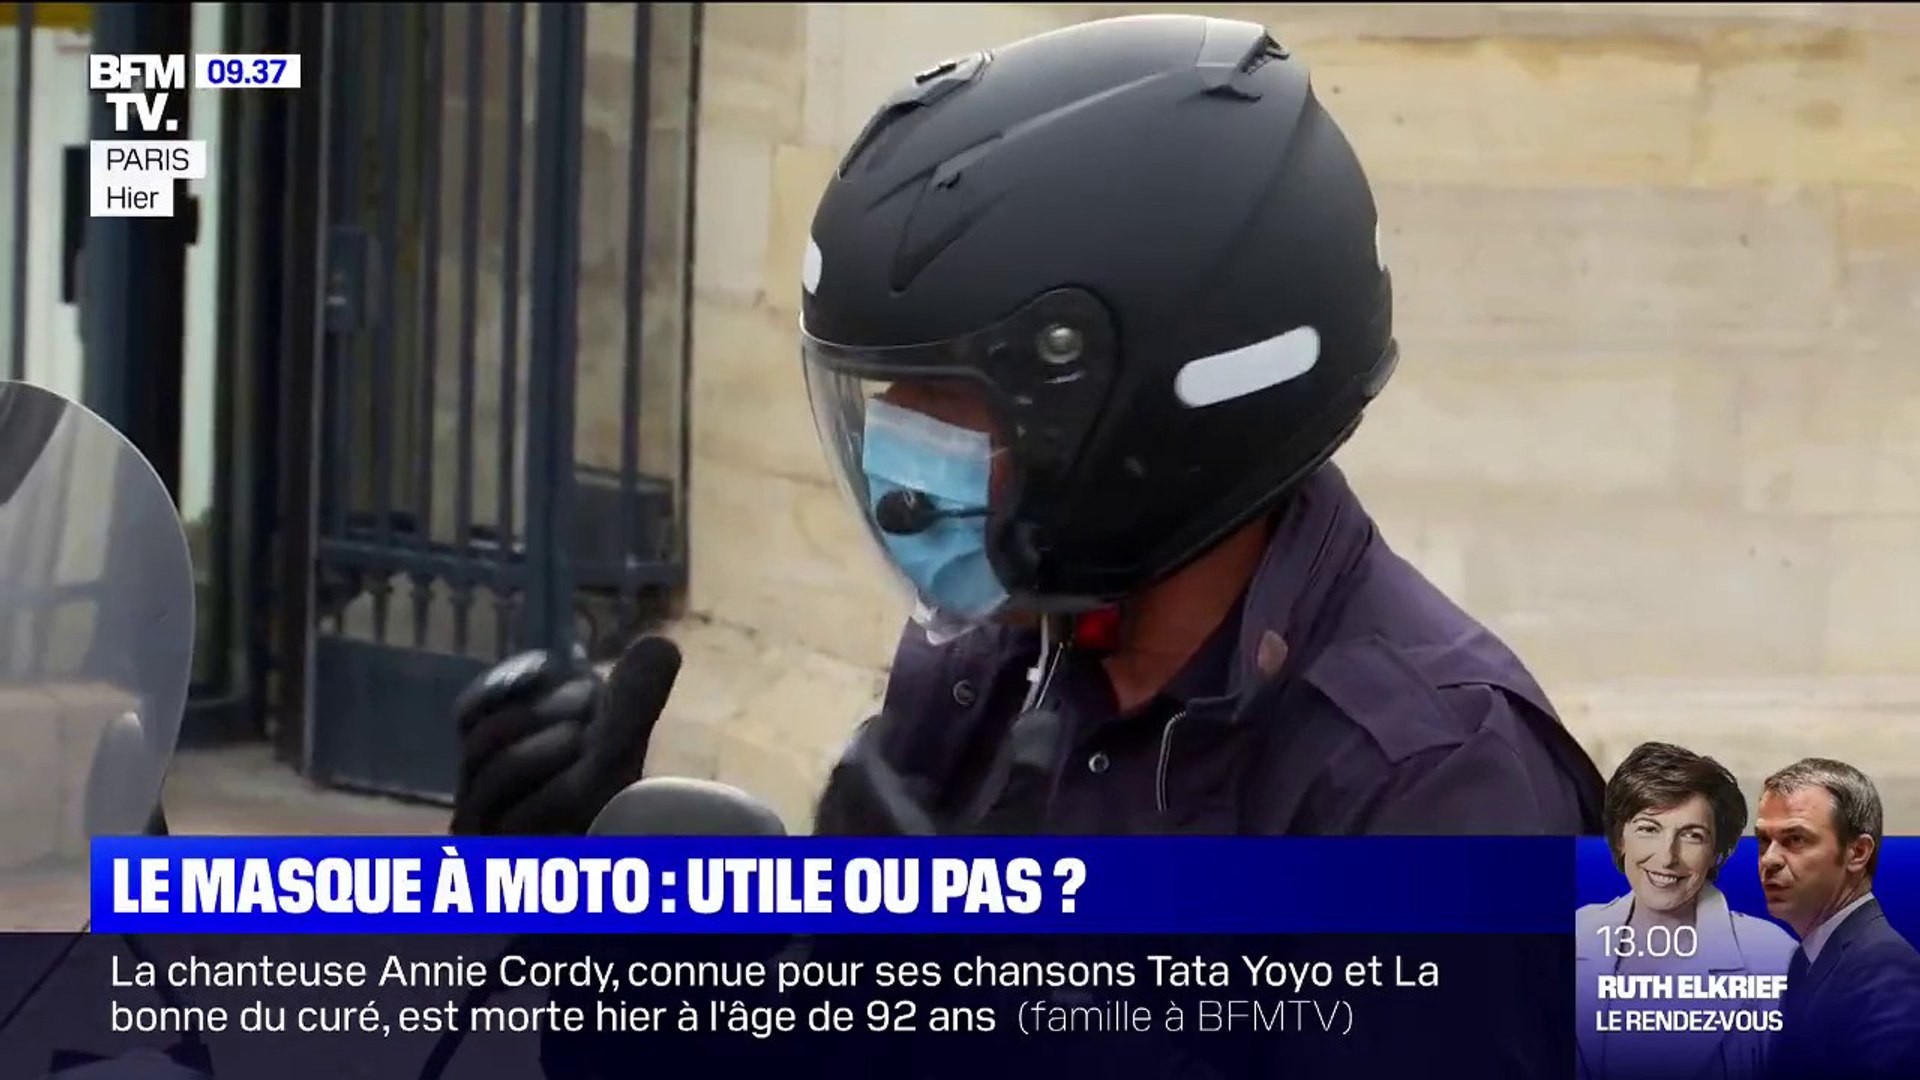 Les conducteurs de deux roues jugent dangereux le port du masque  obligatoire à moto - Vidéo Dailymotion